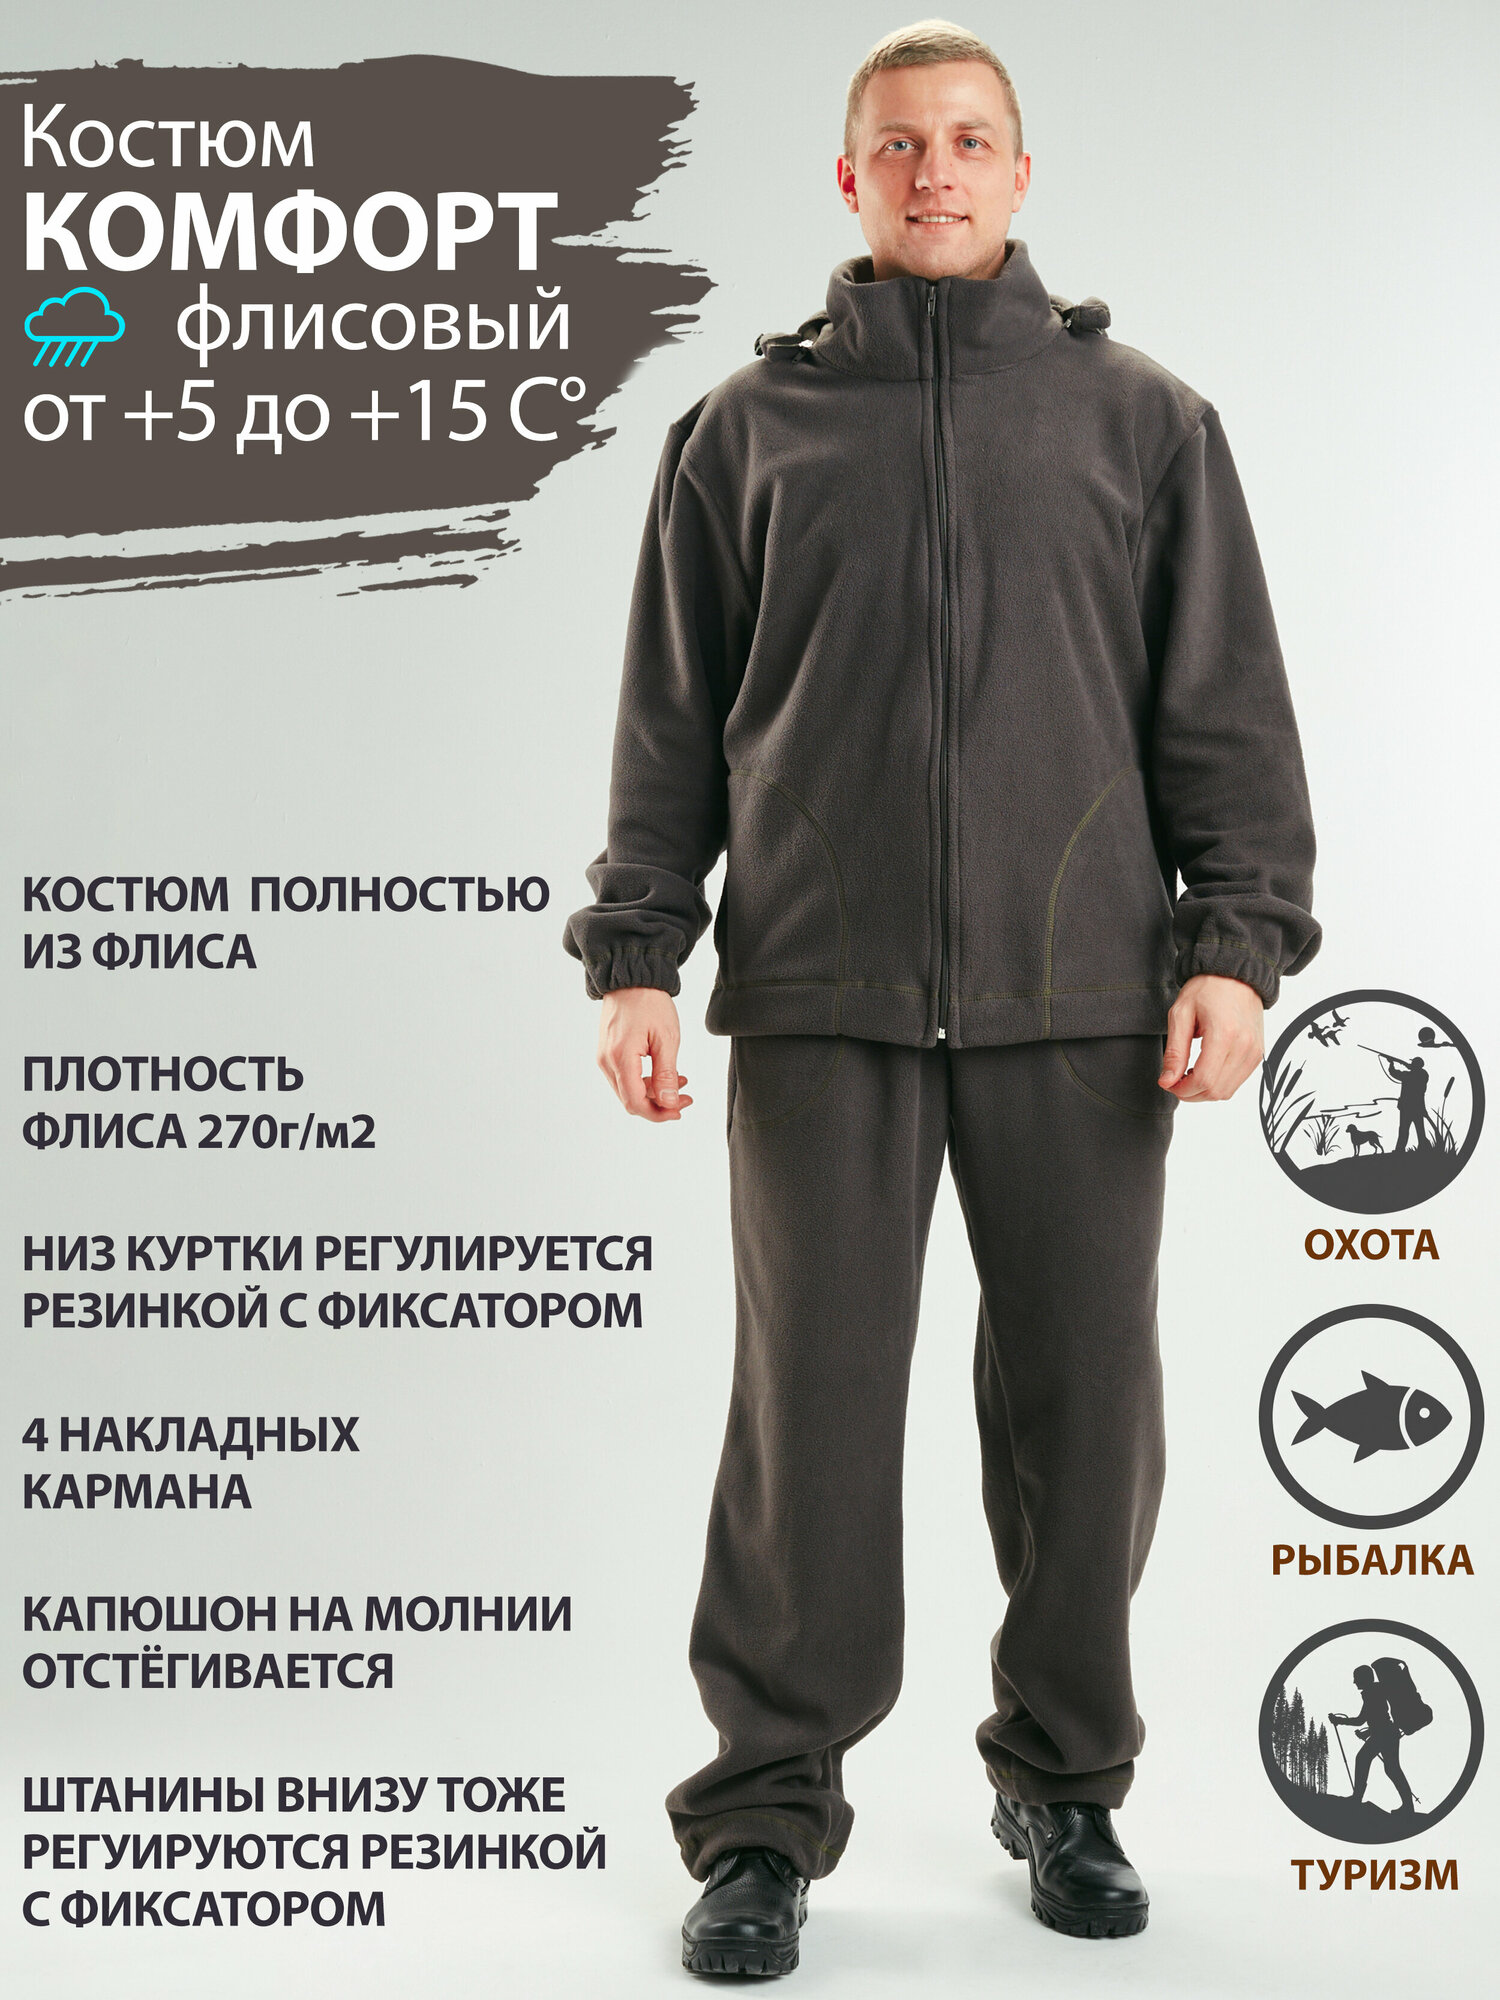 Восток-текс / костюм мужской Комфорт флис спортивный для активного отдыха охота рыбалка туризм